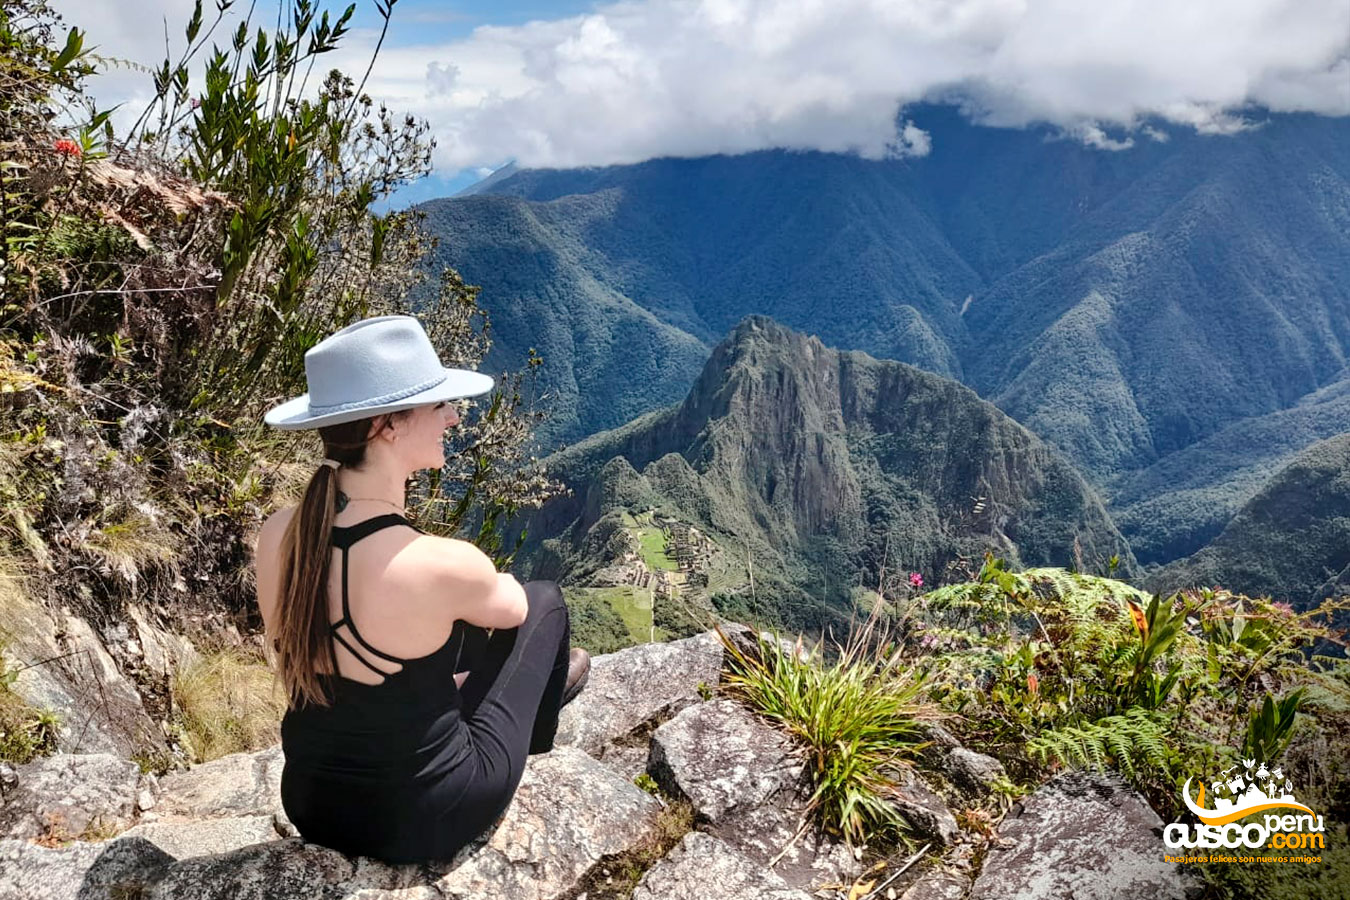 Vista do mirante da montanha Machu Picchu. Fonte: CuscoPeru.com